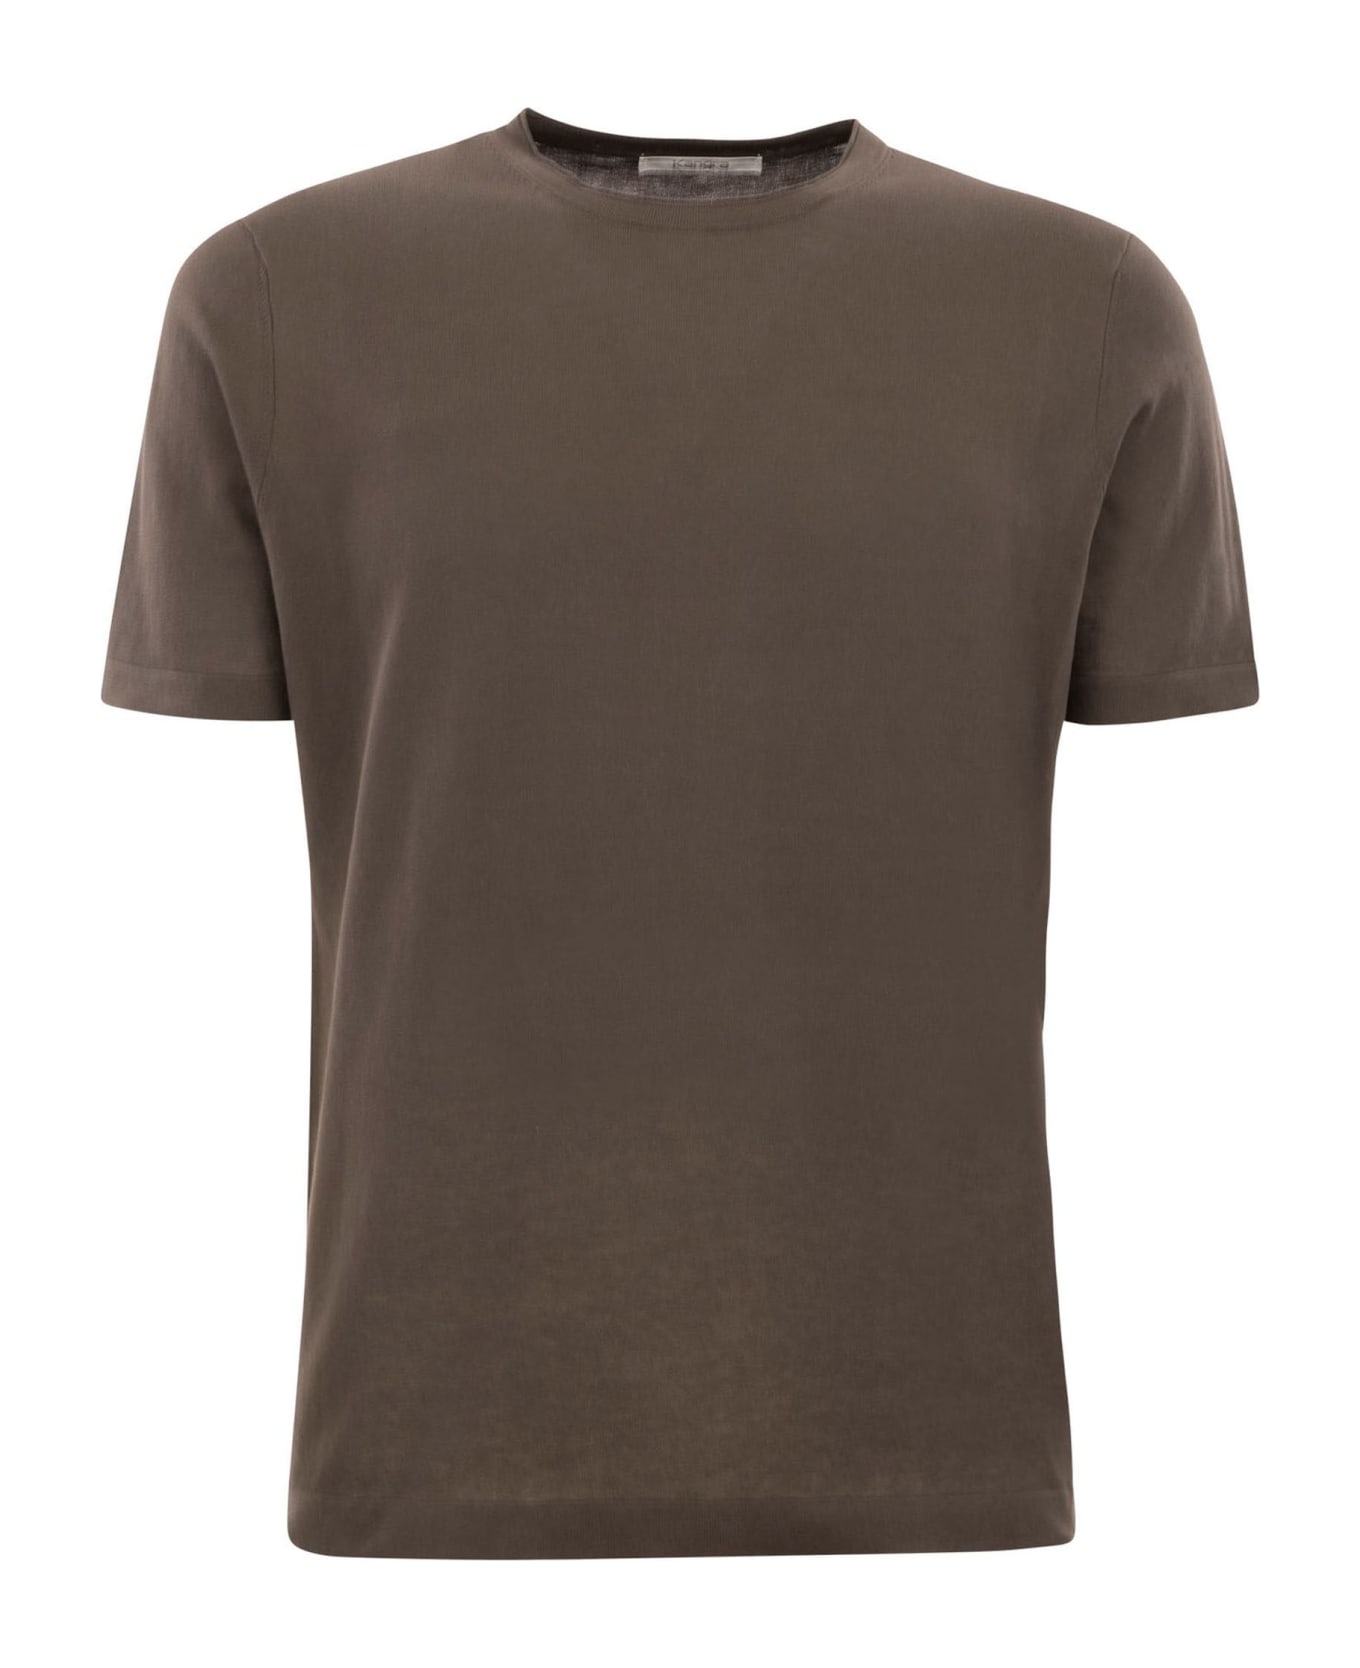 Kangra Brown Cotton Ribbed T-shirt - Brown シャツ